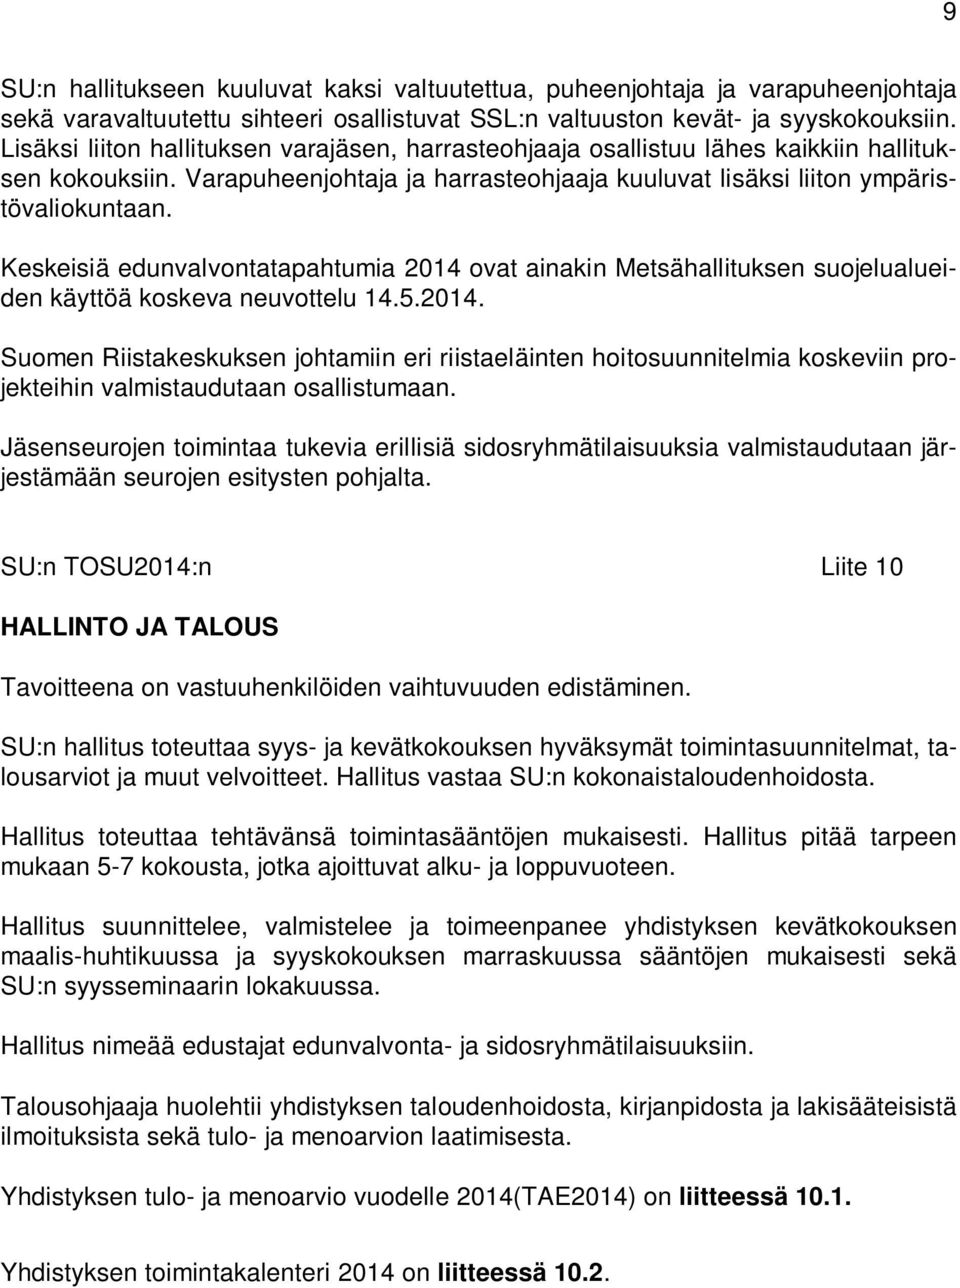 Keskeisiä edunvalvontatapahtumia 2014 ovat ainakin Metsähallituksen suojelualueiden käyttöä koskeva neuvottelu 14.5.2014. Suomen Riistakeskuksen johtamiin eri riistaeläinten hoitosuunnitelmia koskeviin projekteihin valmistaudutaan osallistumaan.